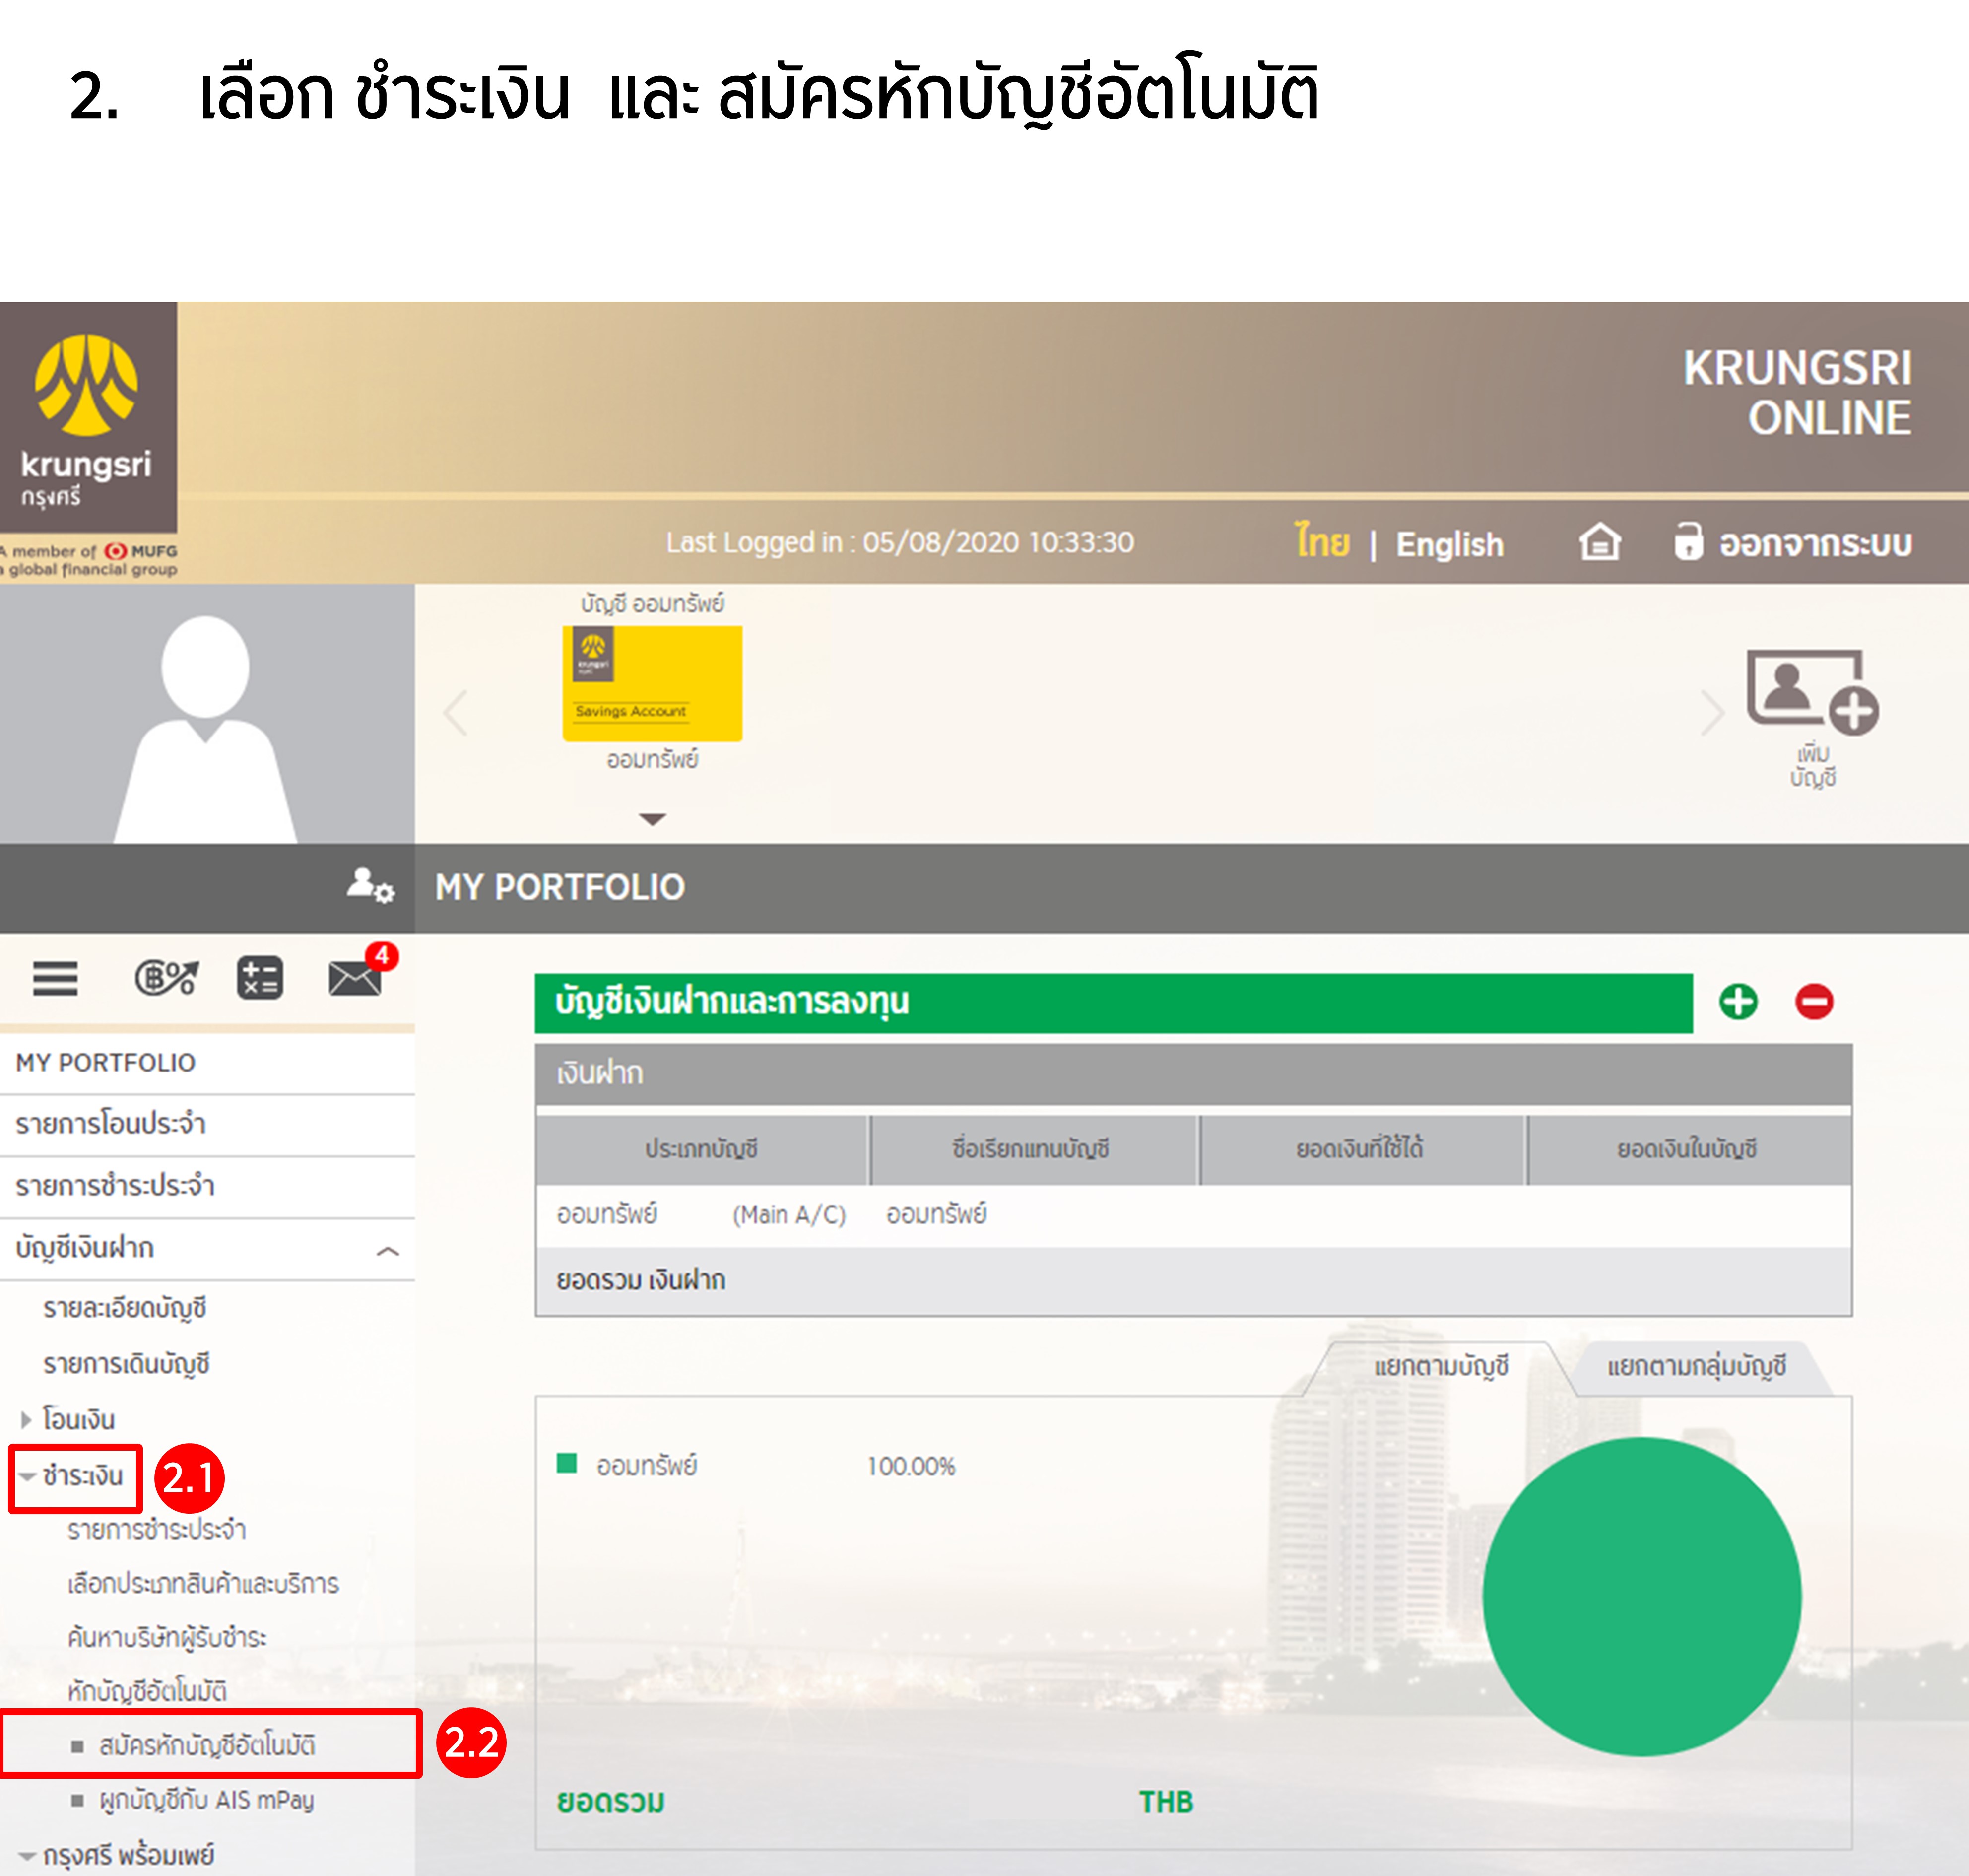 ขั้นตอนการสมัครหักบัญชีเงินฝากอัตโนมัติ ATS ผ่าน Krungsri Online